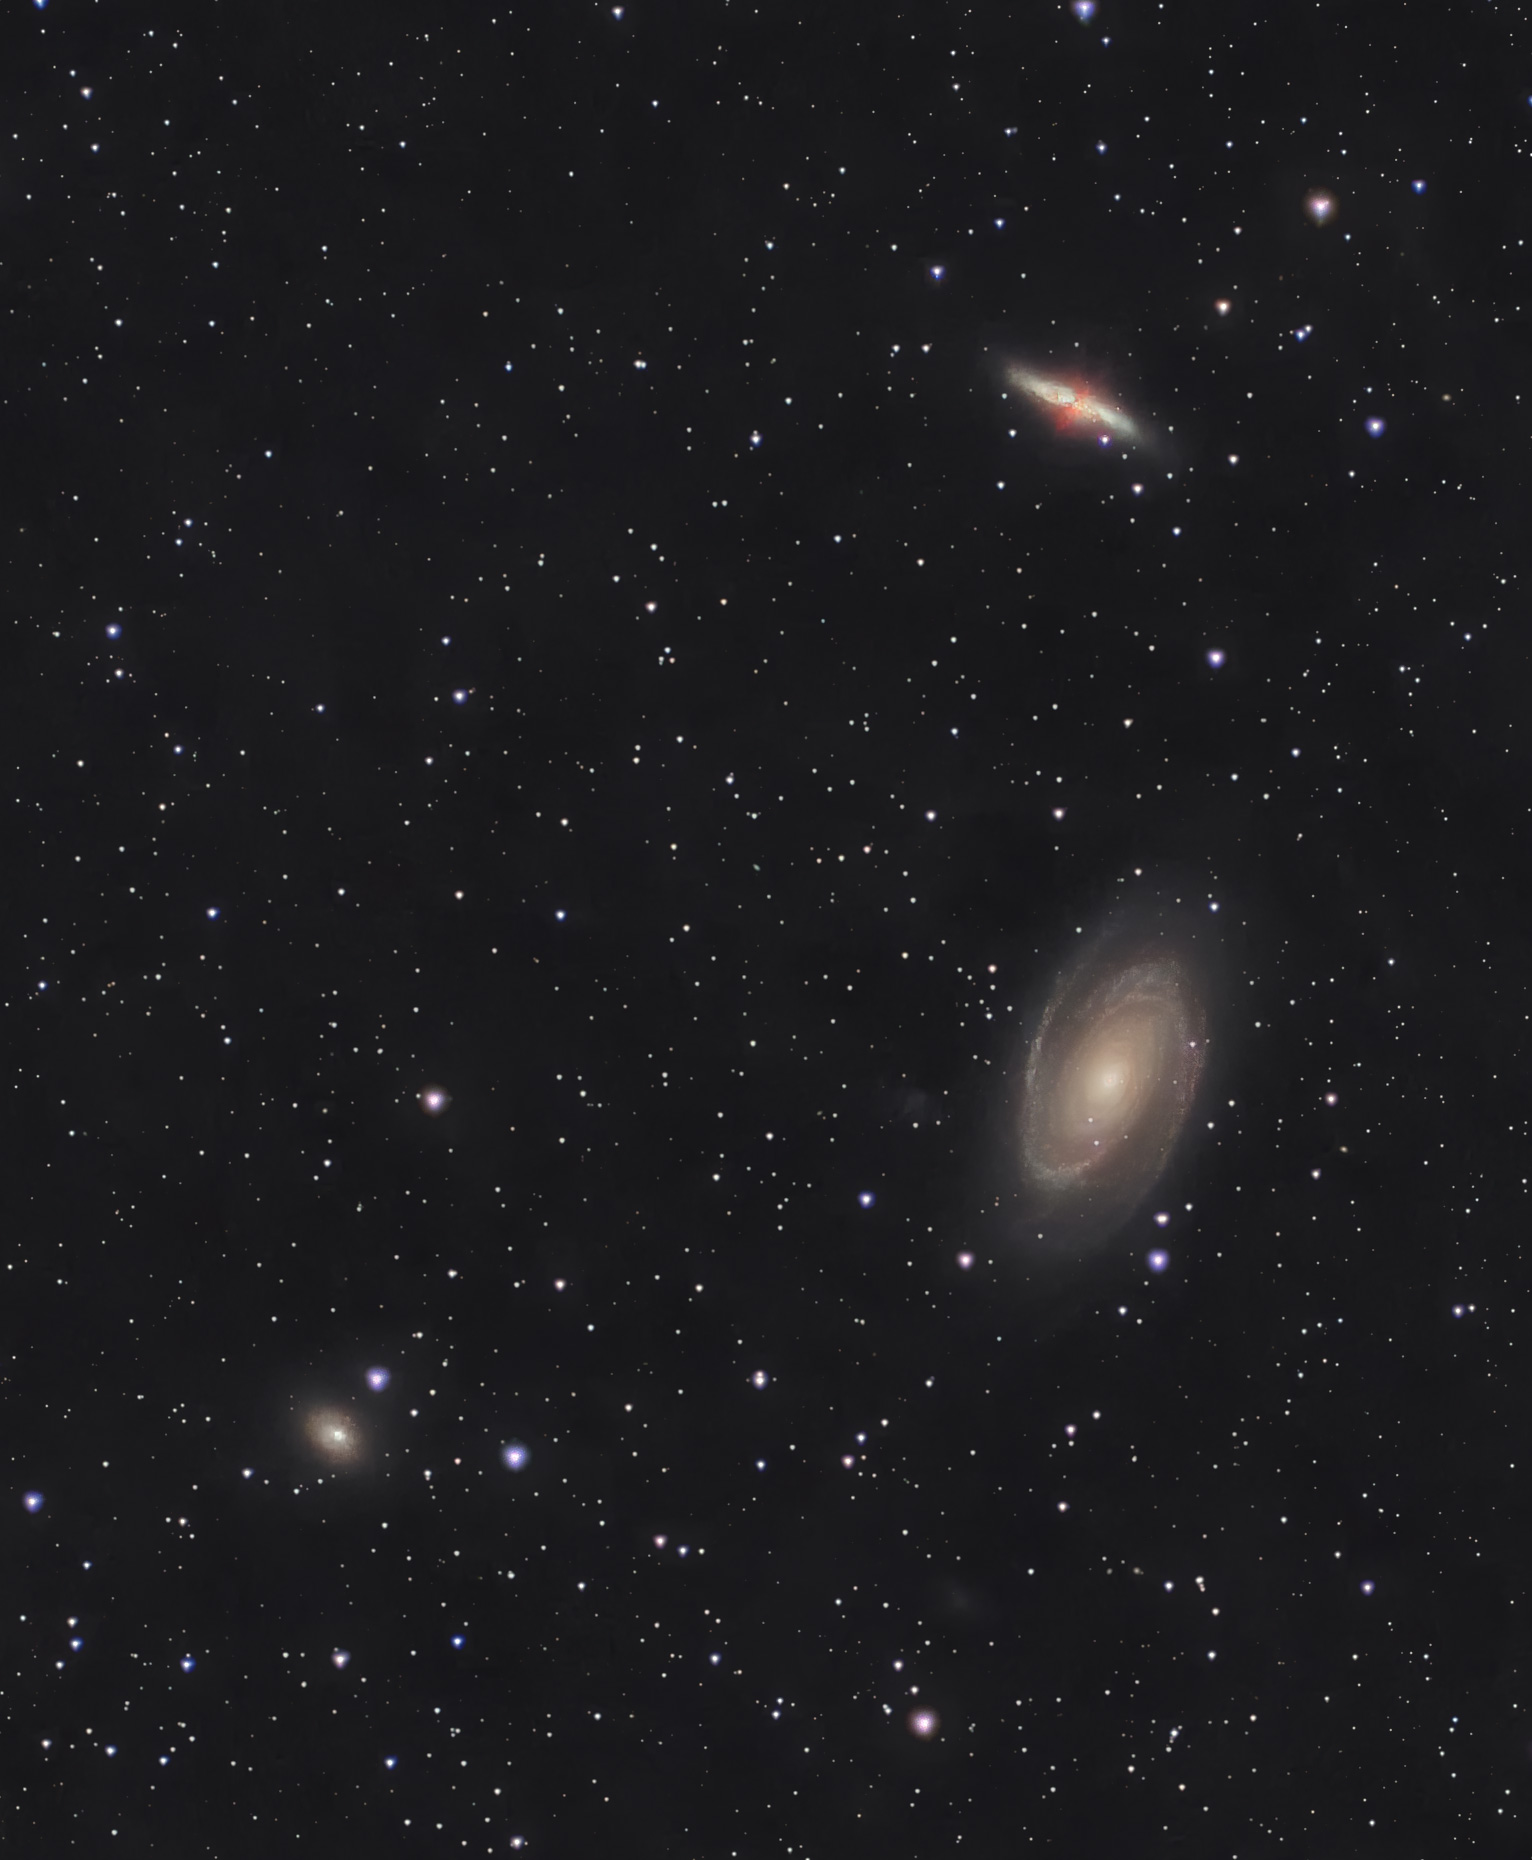 系外銀河M81&M82, NGC3077